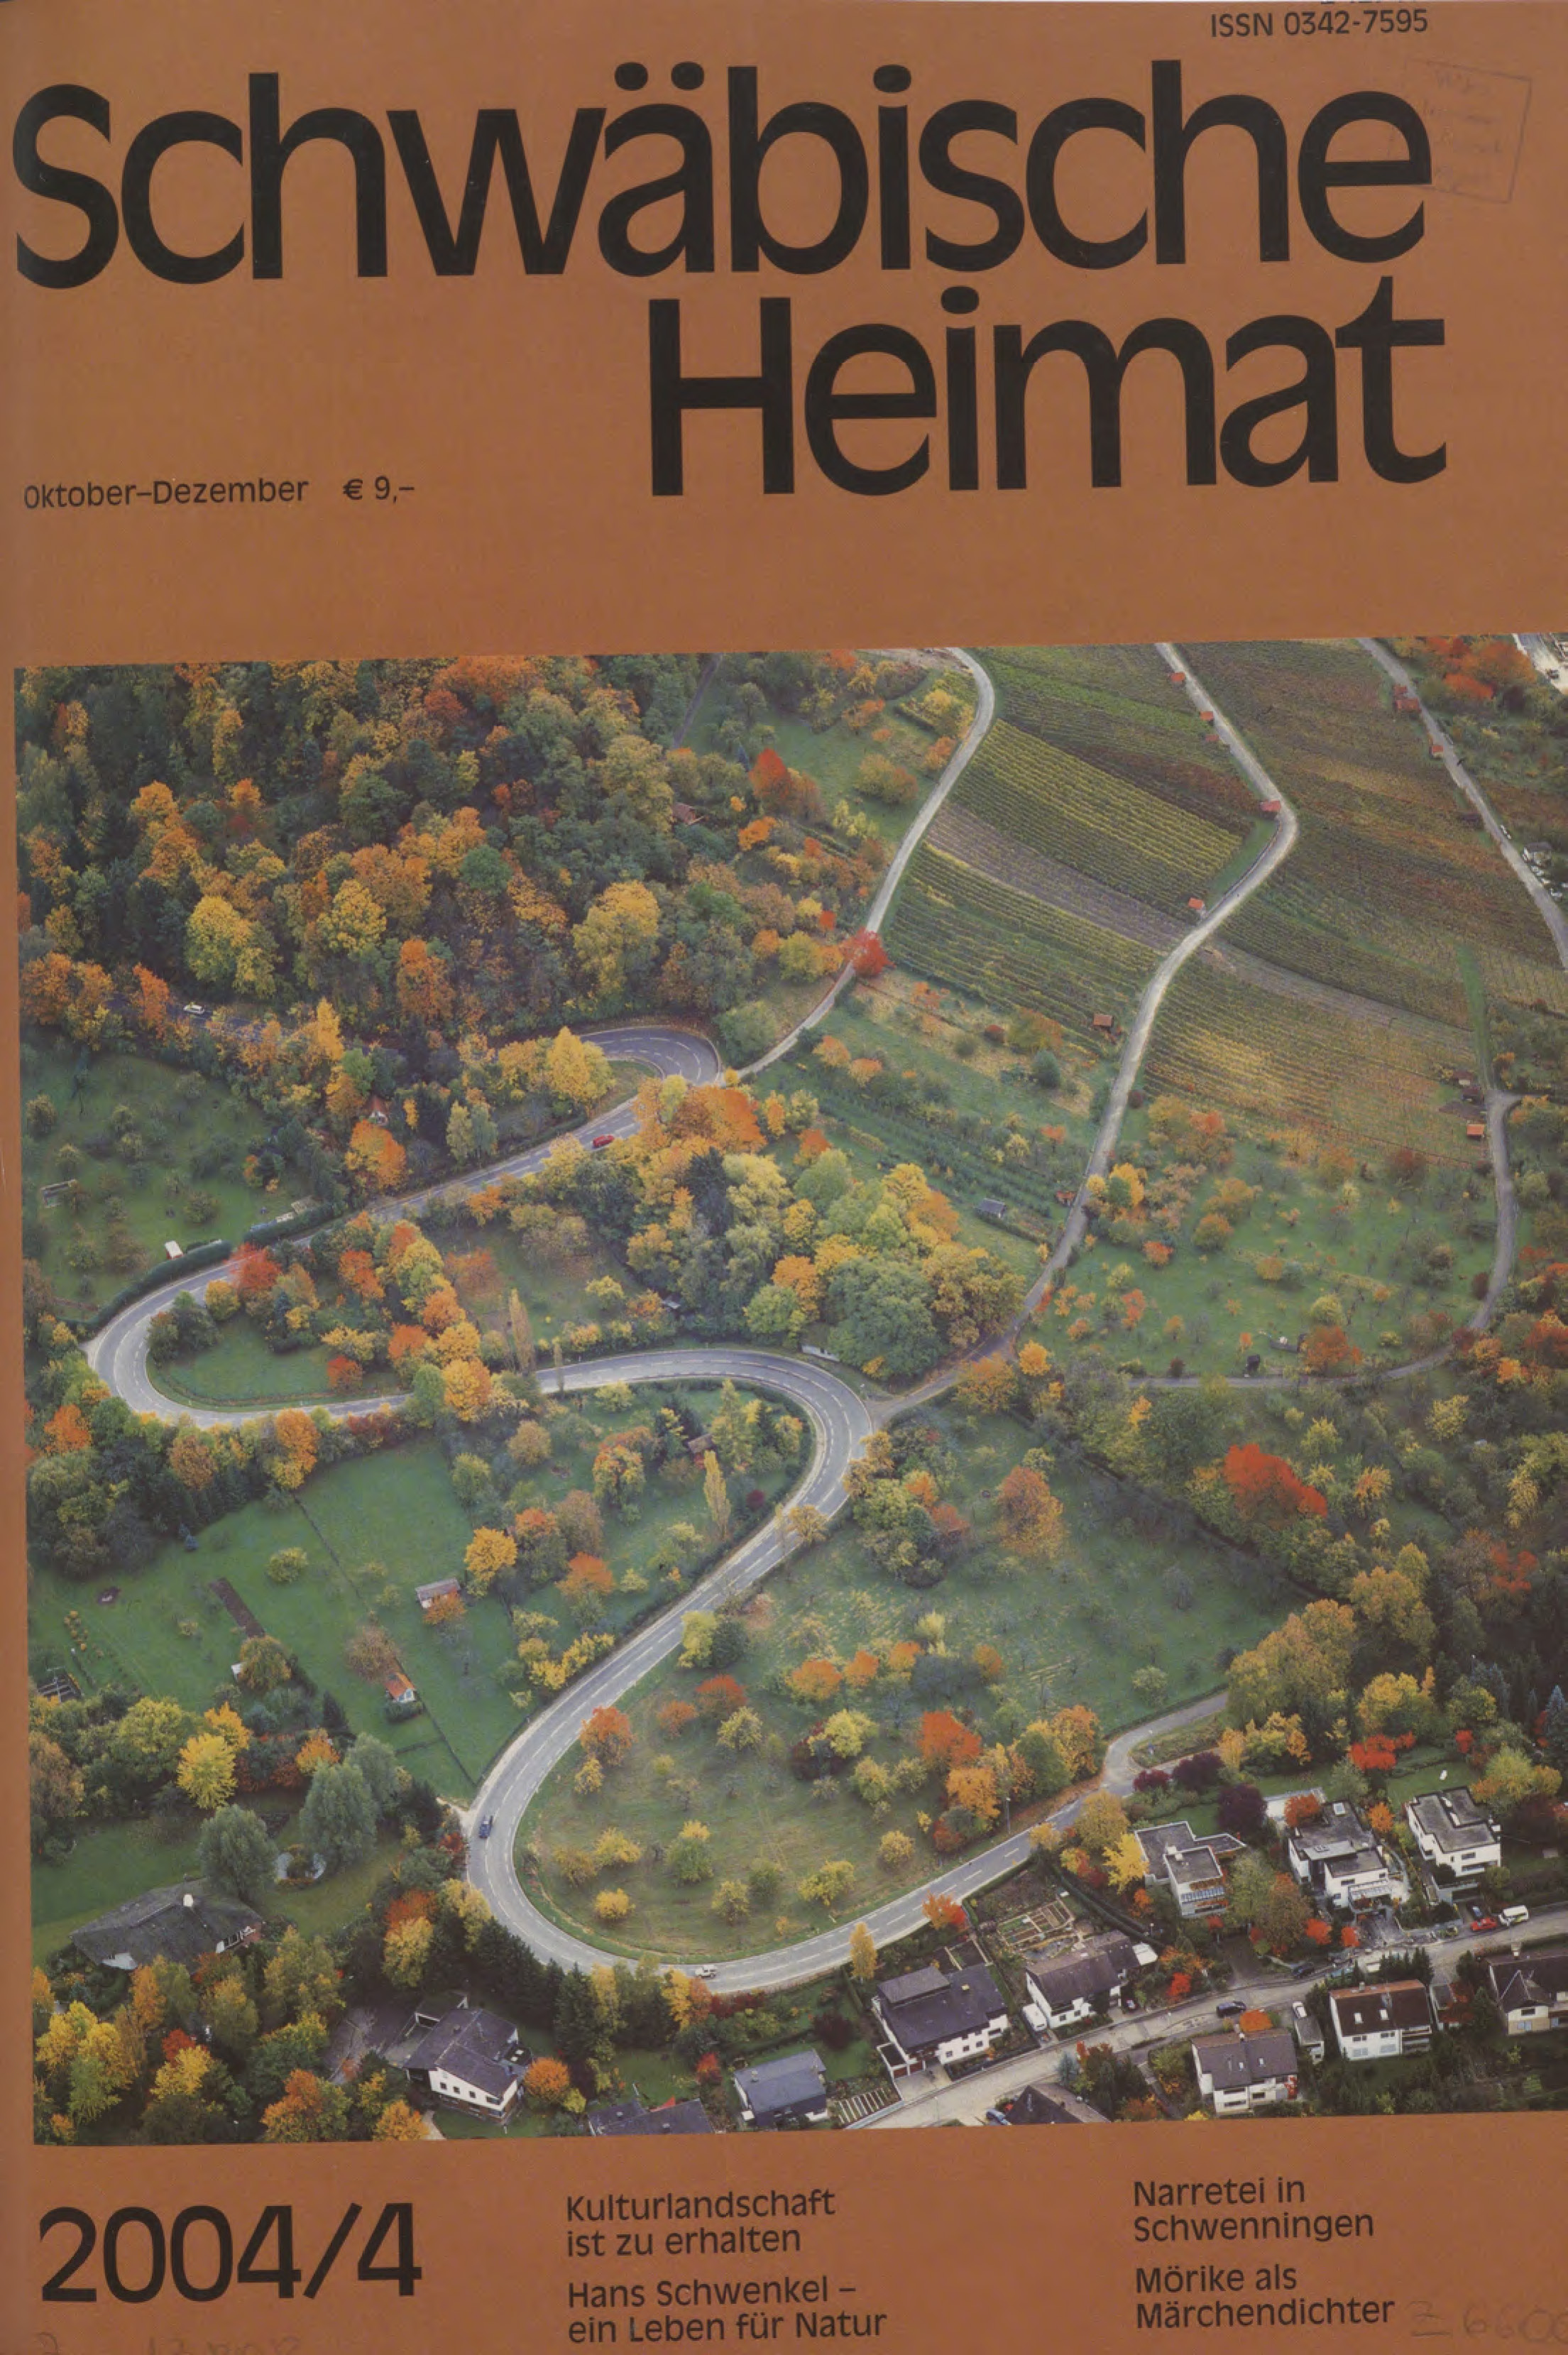                     Ansehen Bd. 55 Nr. 4 (2004): Schwäbische Heimat
                